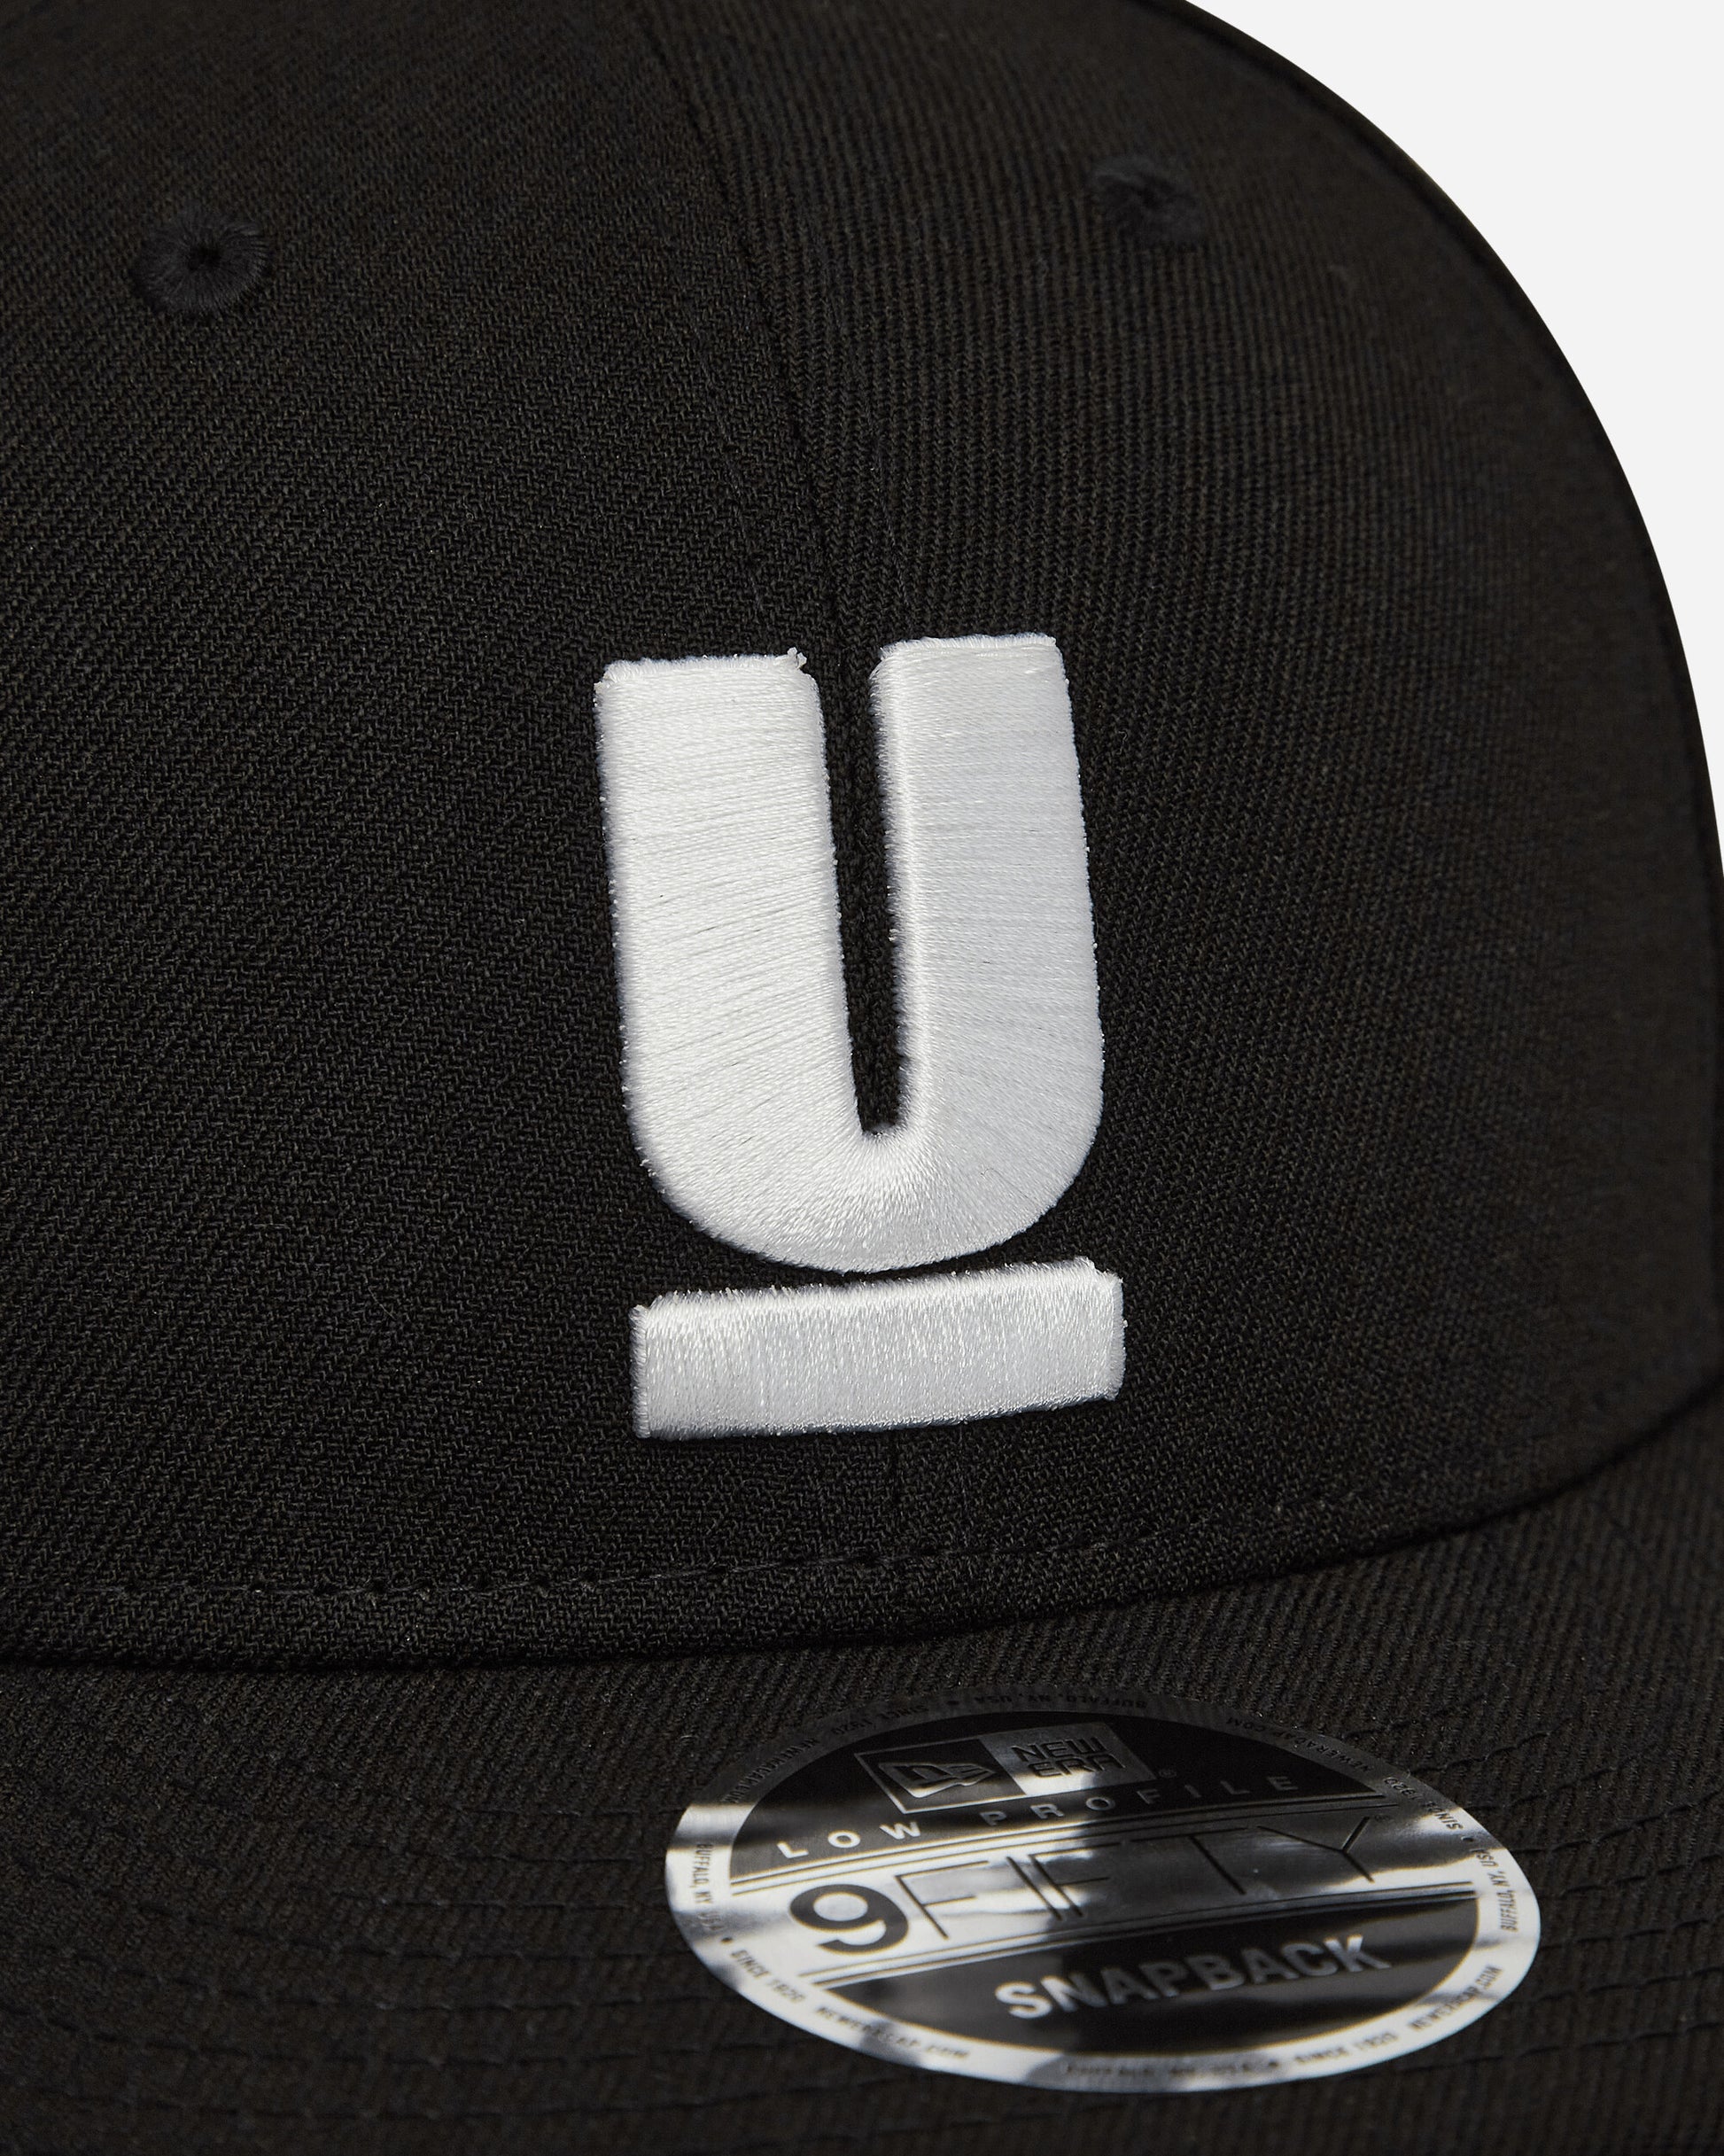 Undercover U Signature Cap Black Hats Caps UB0D6H01-1 1